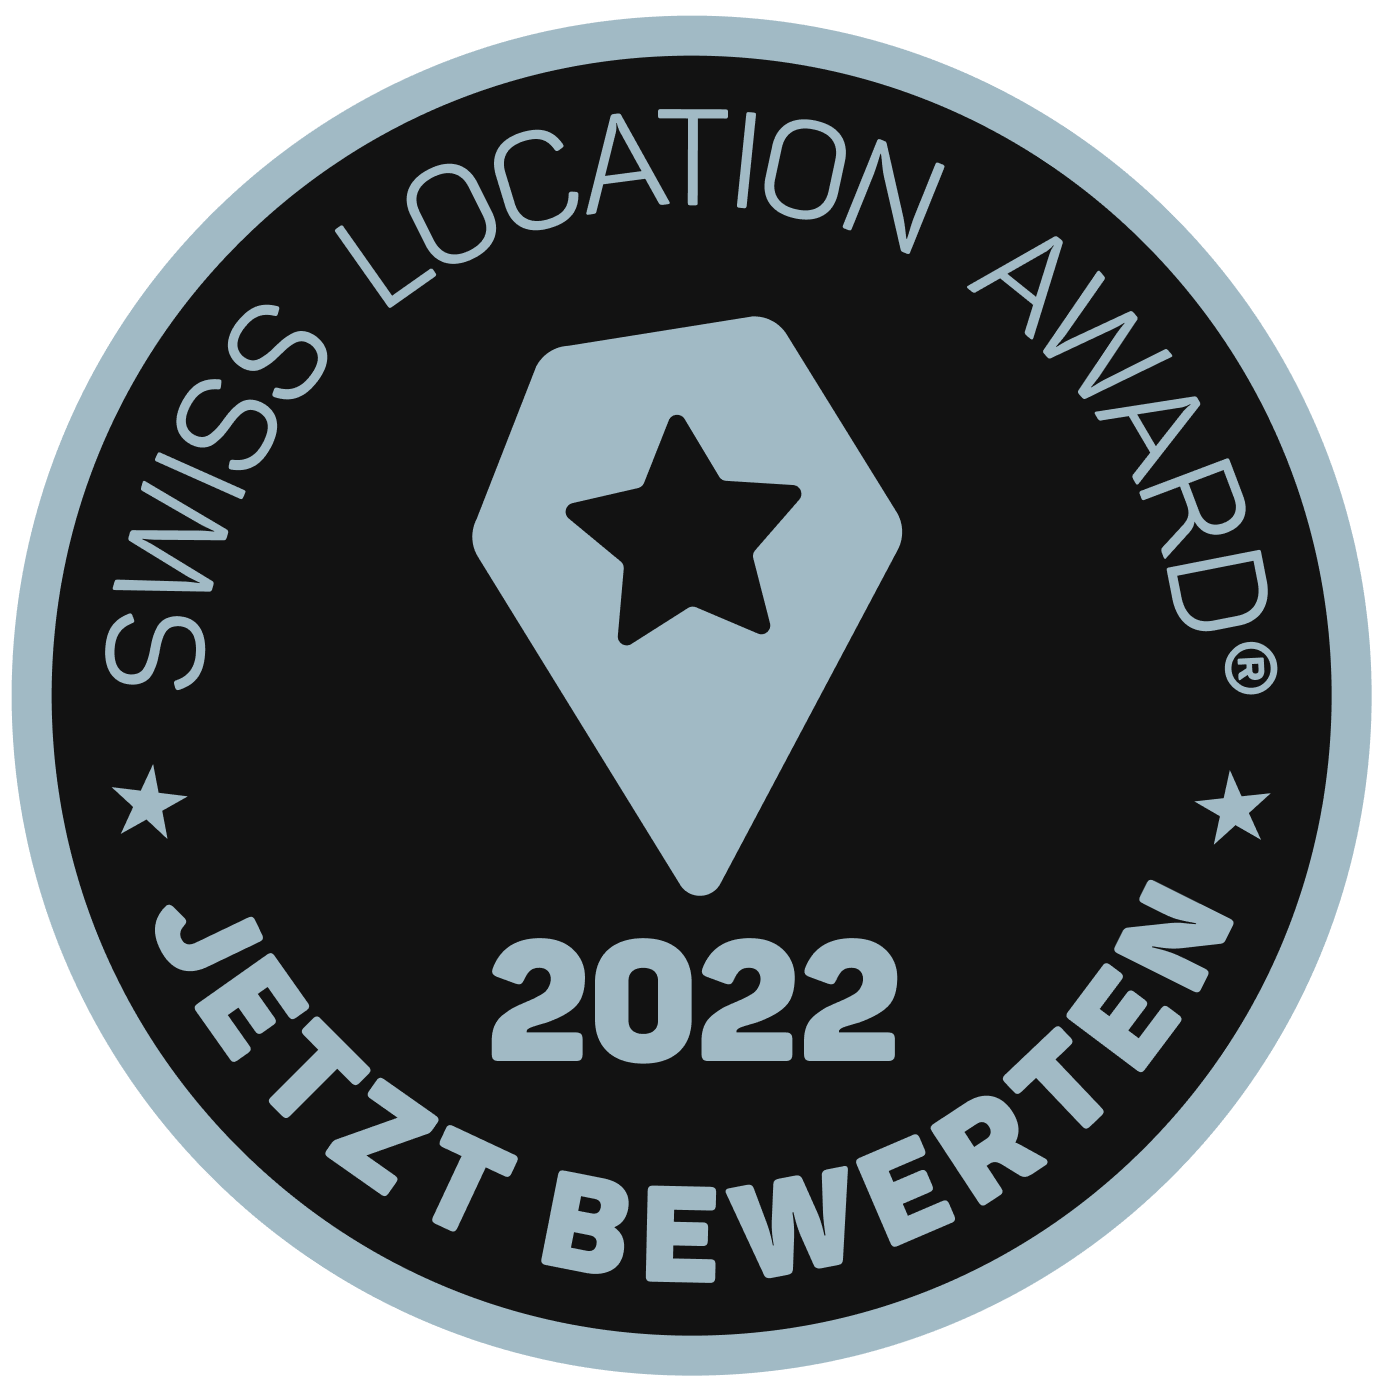 Batch zum Swiss Location Award 2022.